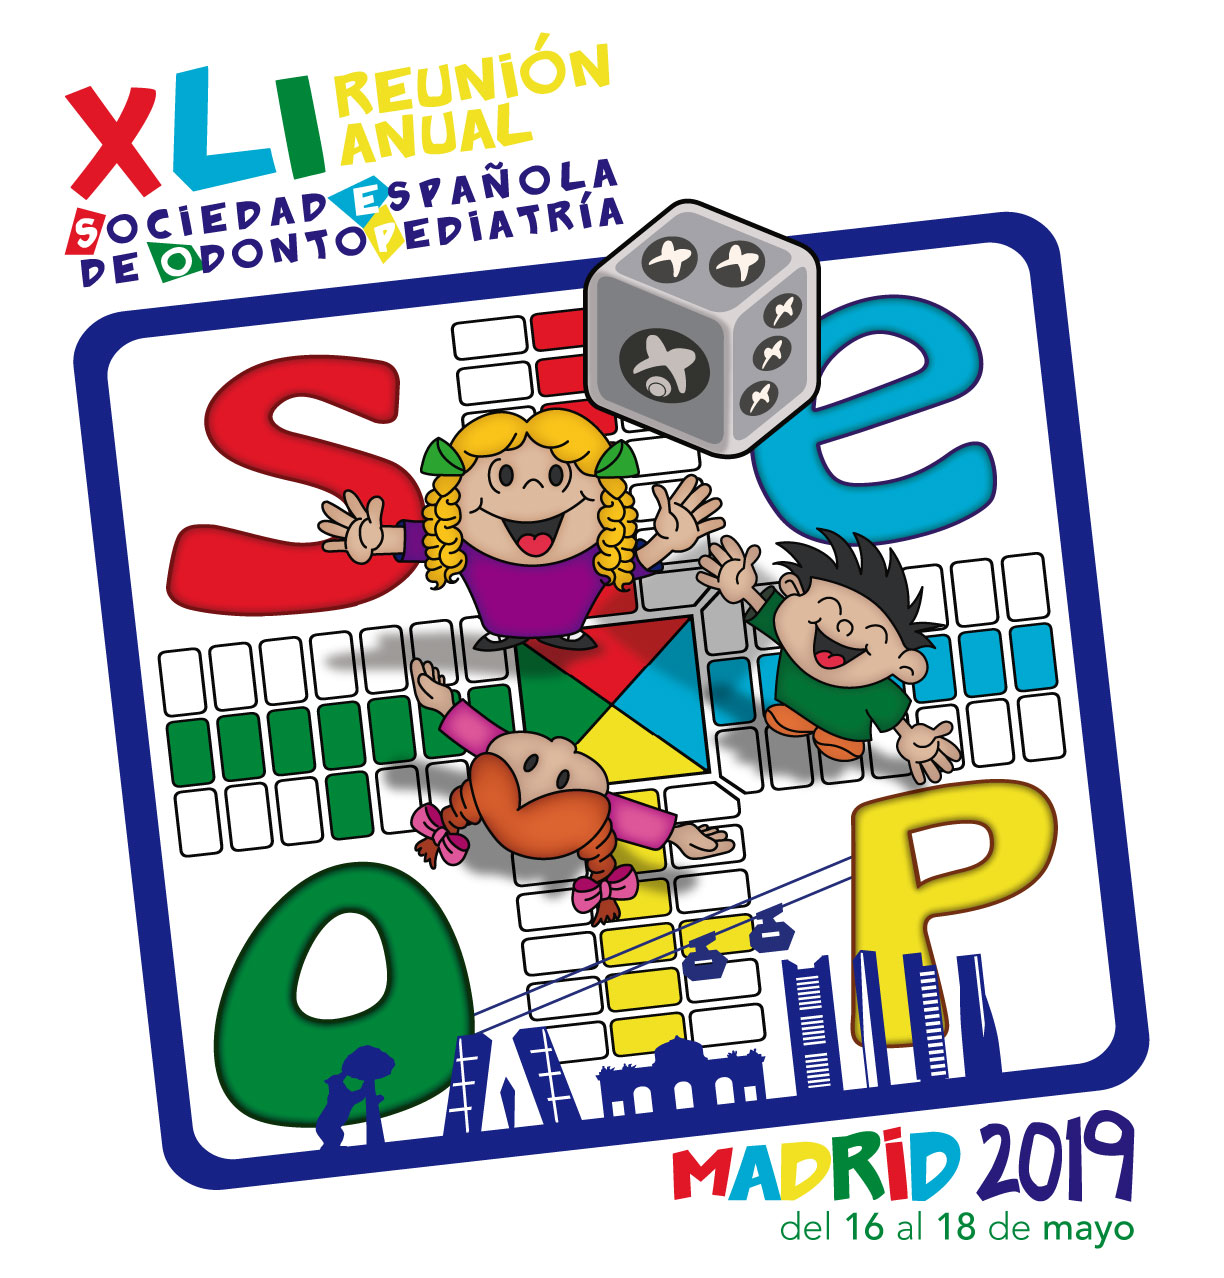 La Sociedad Española de Odontopediatría (Seop) celebrará su XLI Reunión Anual entre los días 15 y 18 de mayo de 2019 en la ciudad de Madrid, bajo el lema "Aprender jugando".